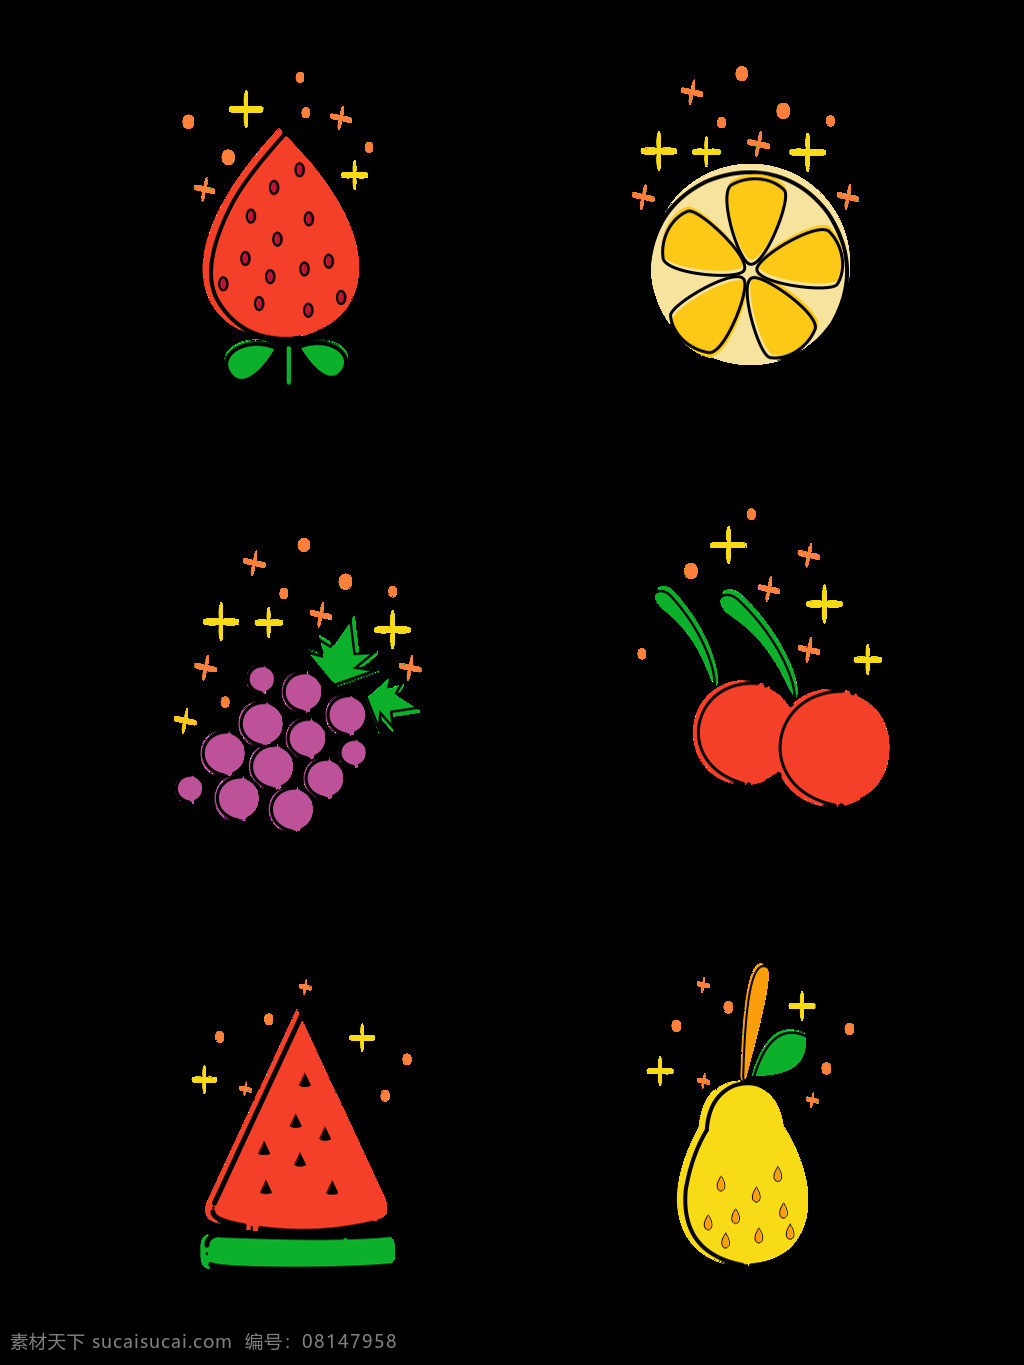 mbe 图标 元素 卡通 可爱 简约 水果 图案 葡萄 mbe图标 元素设计 草莓 柠檬 樱桃 西瓜 梨